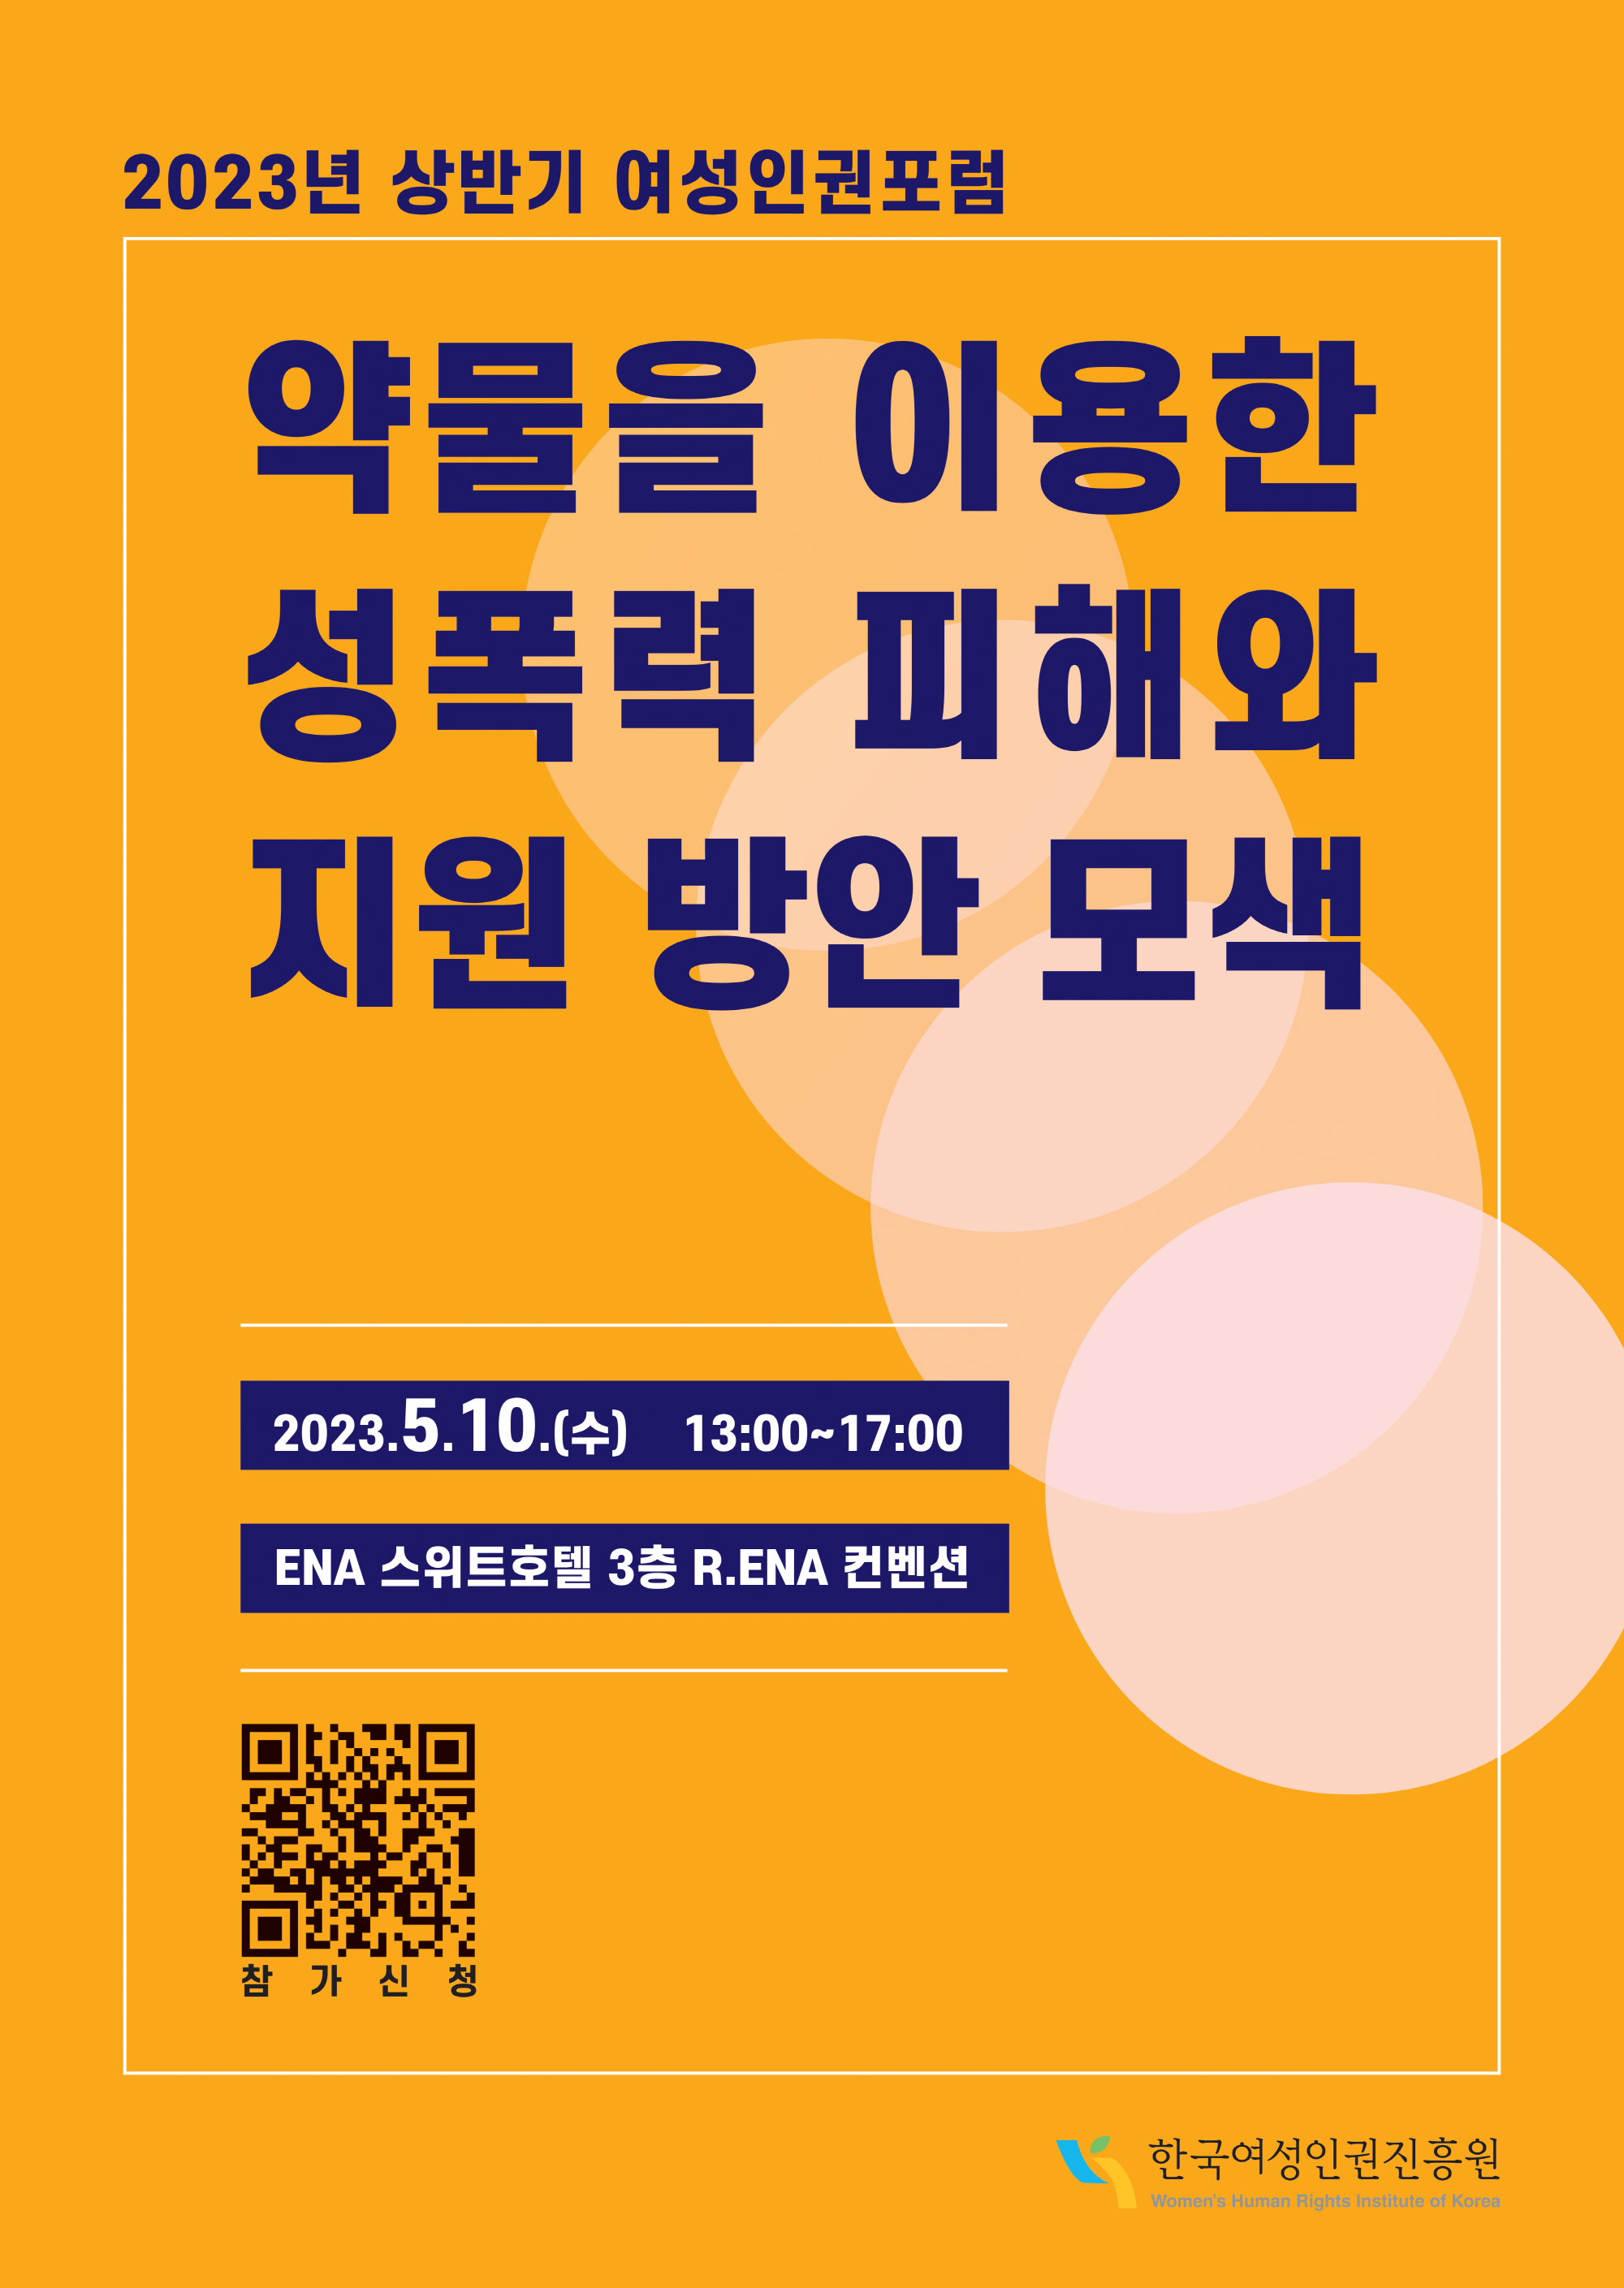 2023년 상반기 여성인권포럼 약물을 이용한 성폭력 피해와 지원 방안 모색 2023.5.10.(수) 13:00~17:00 ENA 스위트호텔 3층 R.ENA 컨벤션 QR코드 참가신청 한국여성인권진흥원 Women's Human Right's Institute of Korea